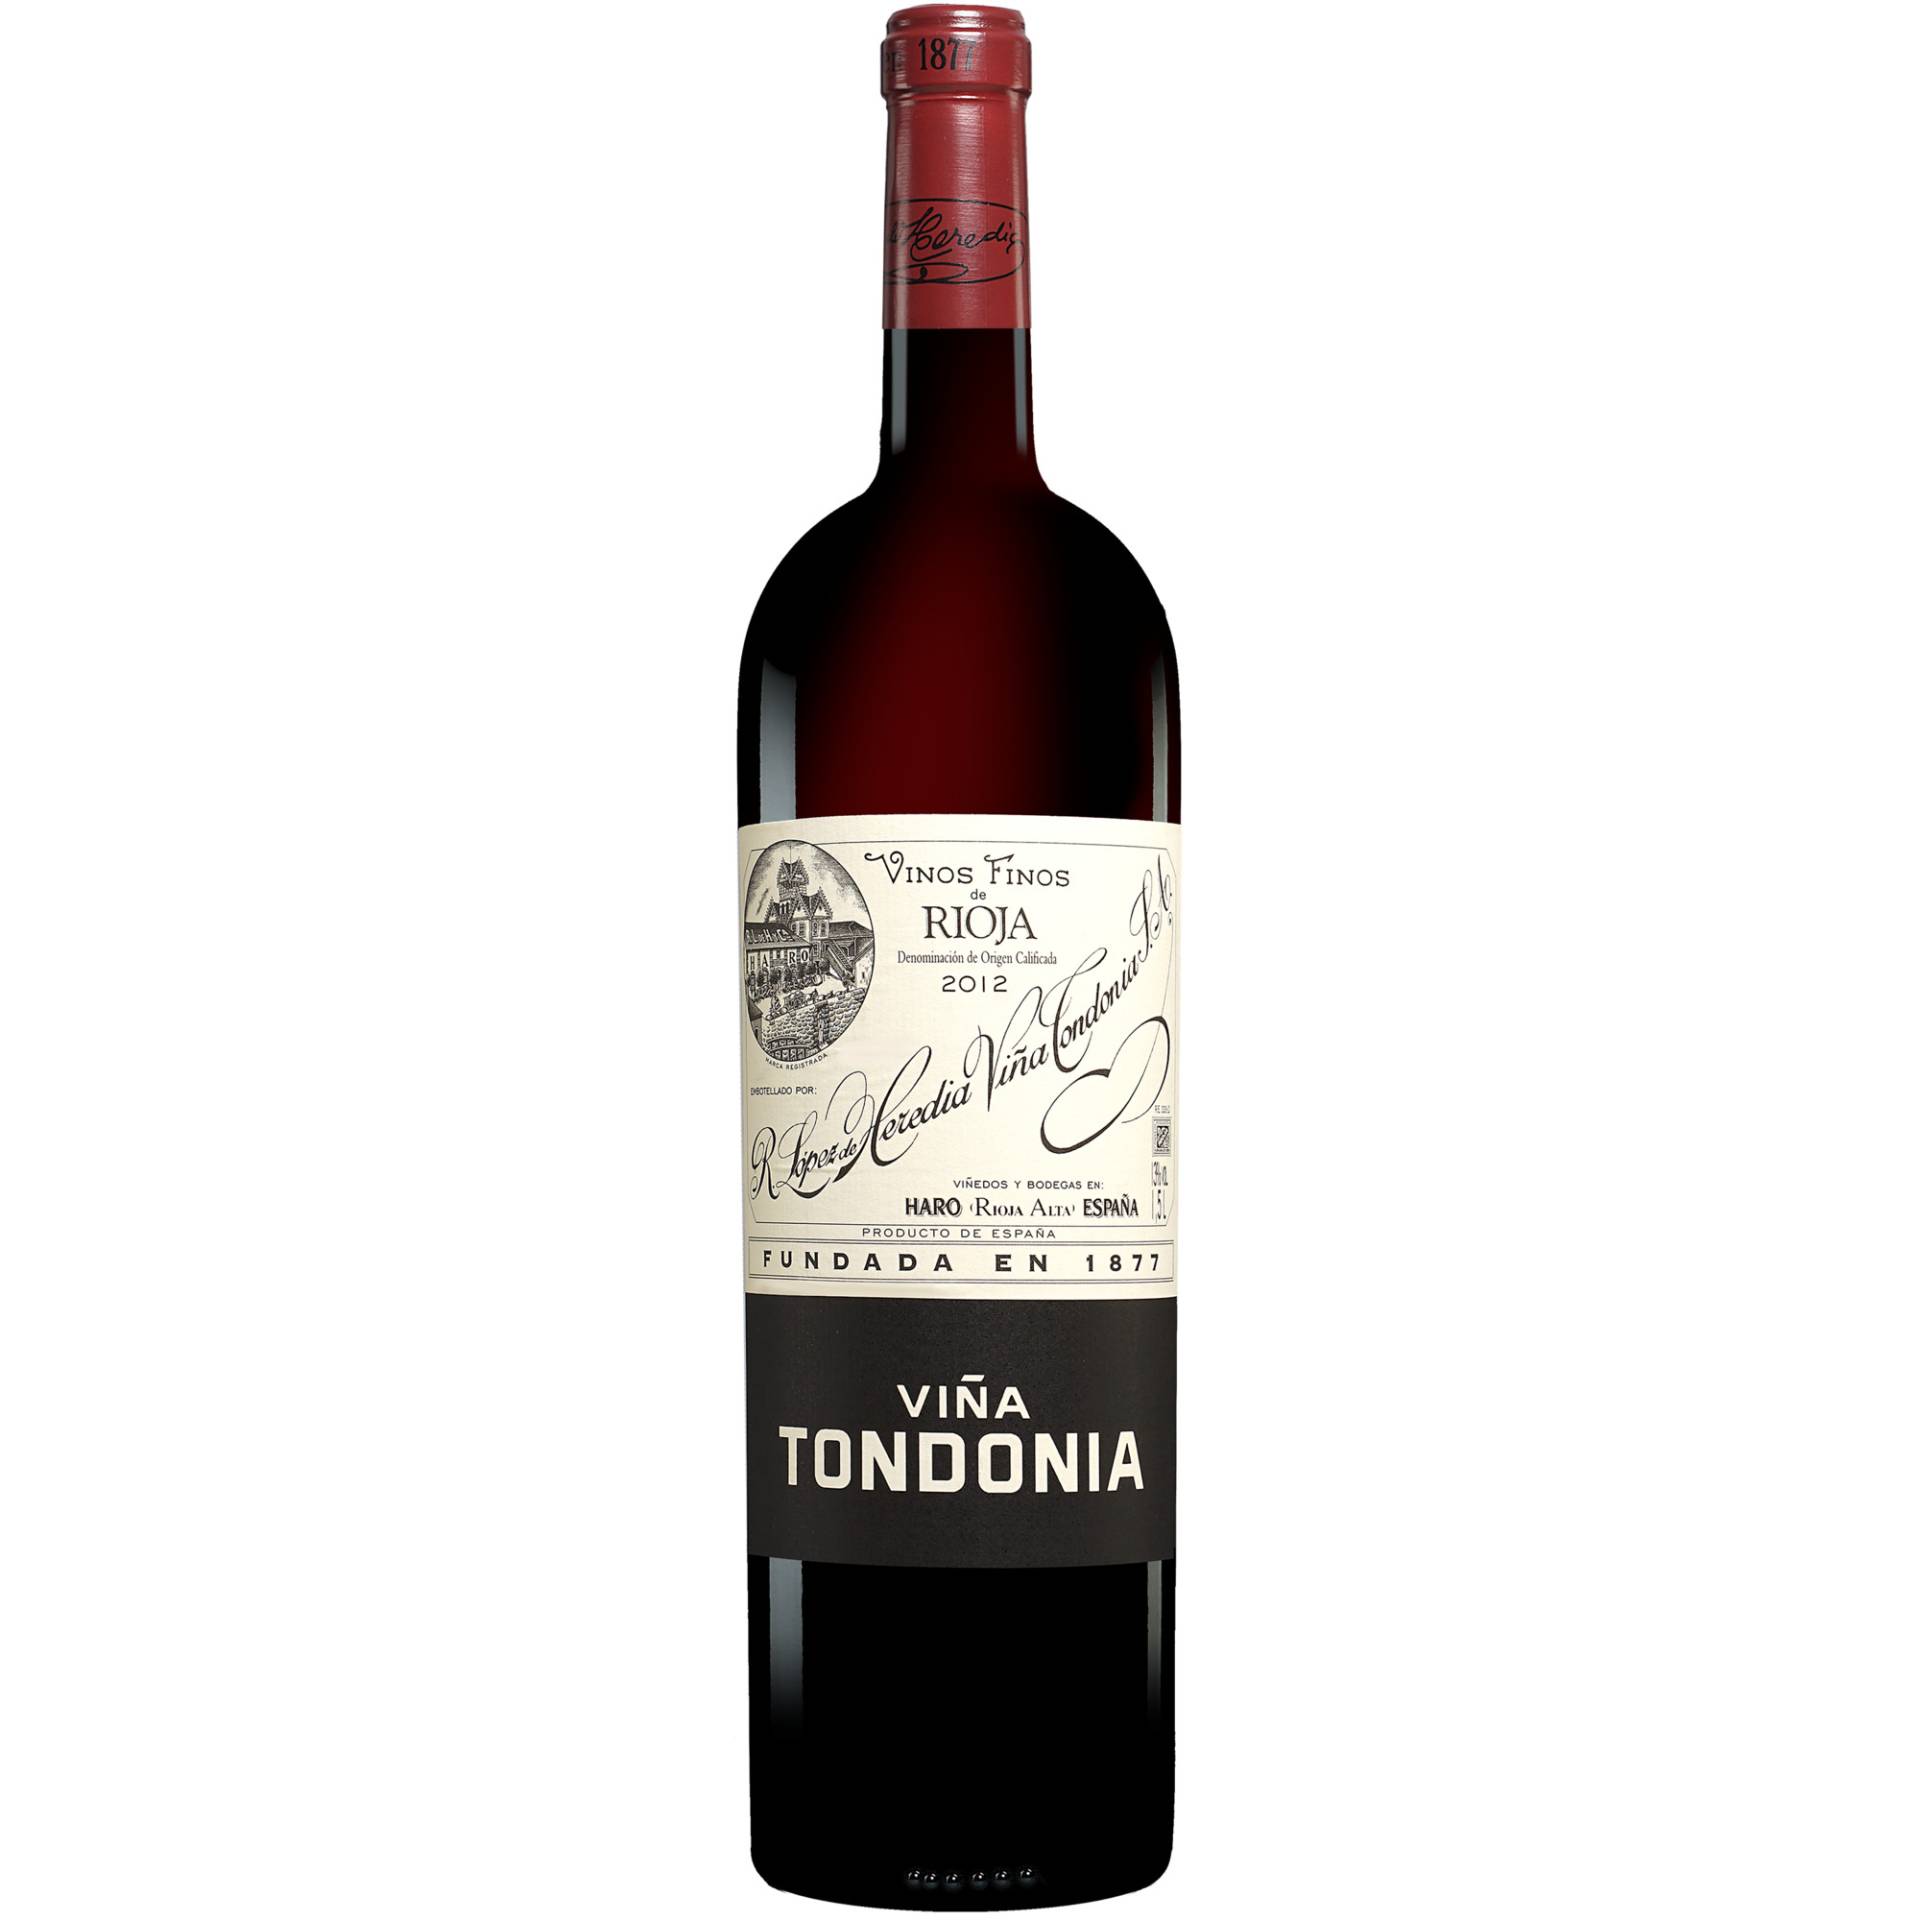 Tondonia »Viña Tondonia« Tinto Reserva - 1,5 L. Magnum 2012  1.5L 13% Vol. Rotwein Trocken aus Spanien von López de Heredia - Viña Tondonia